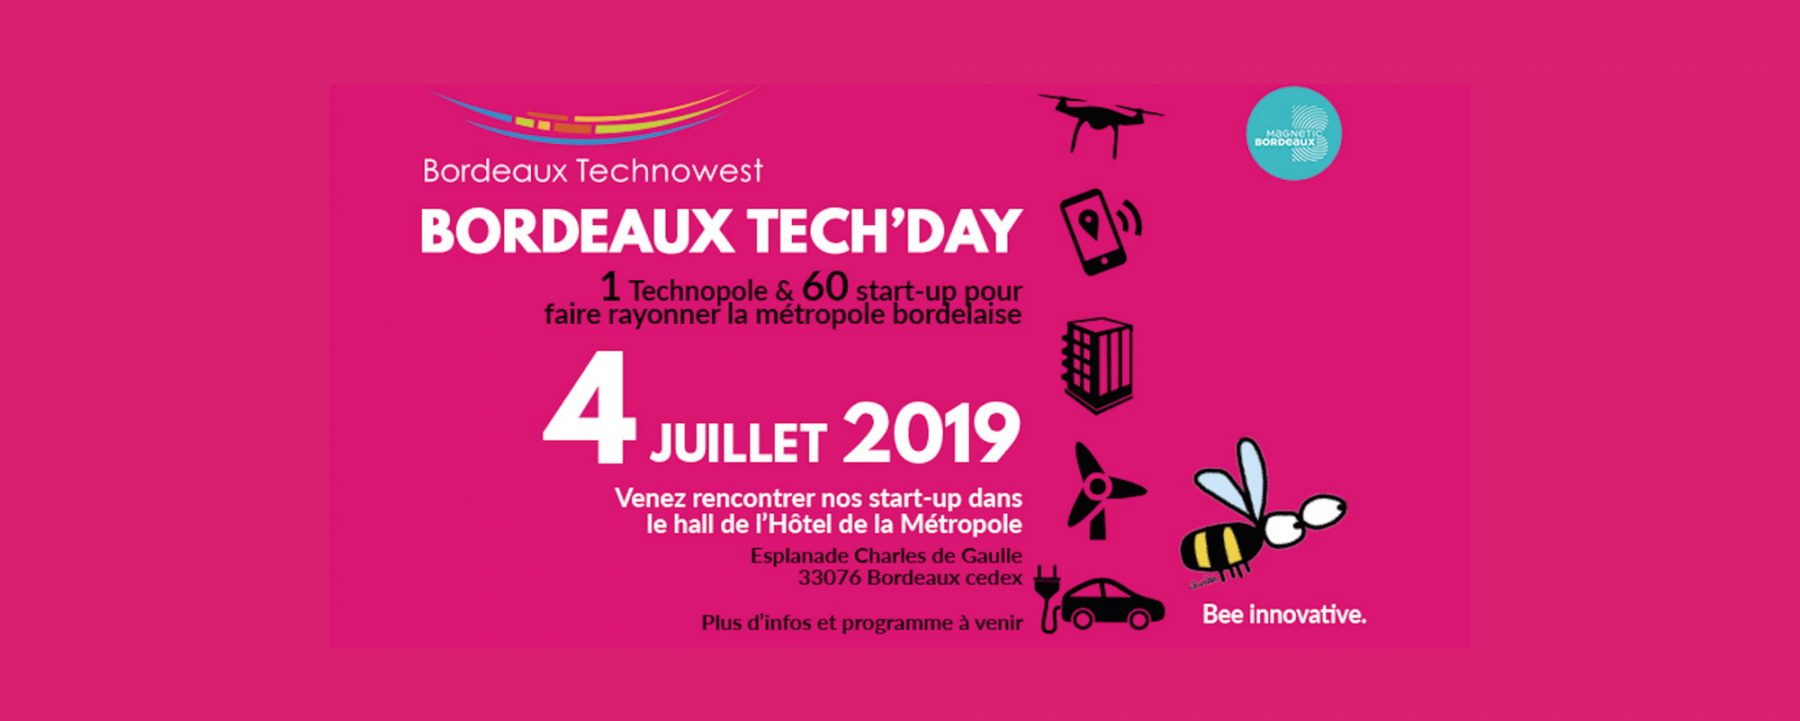 Bordeaux Tech'Day 2019 banner